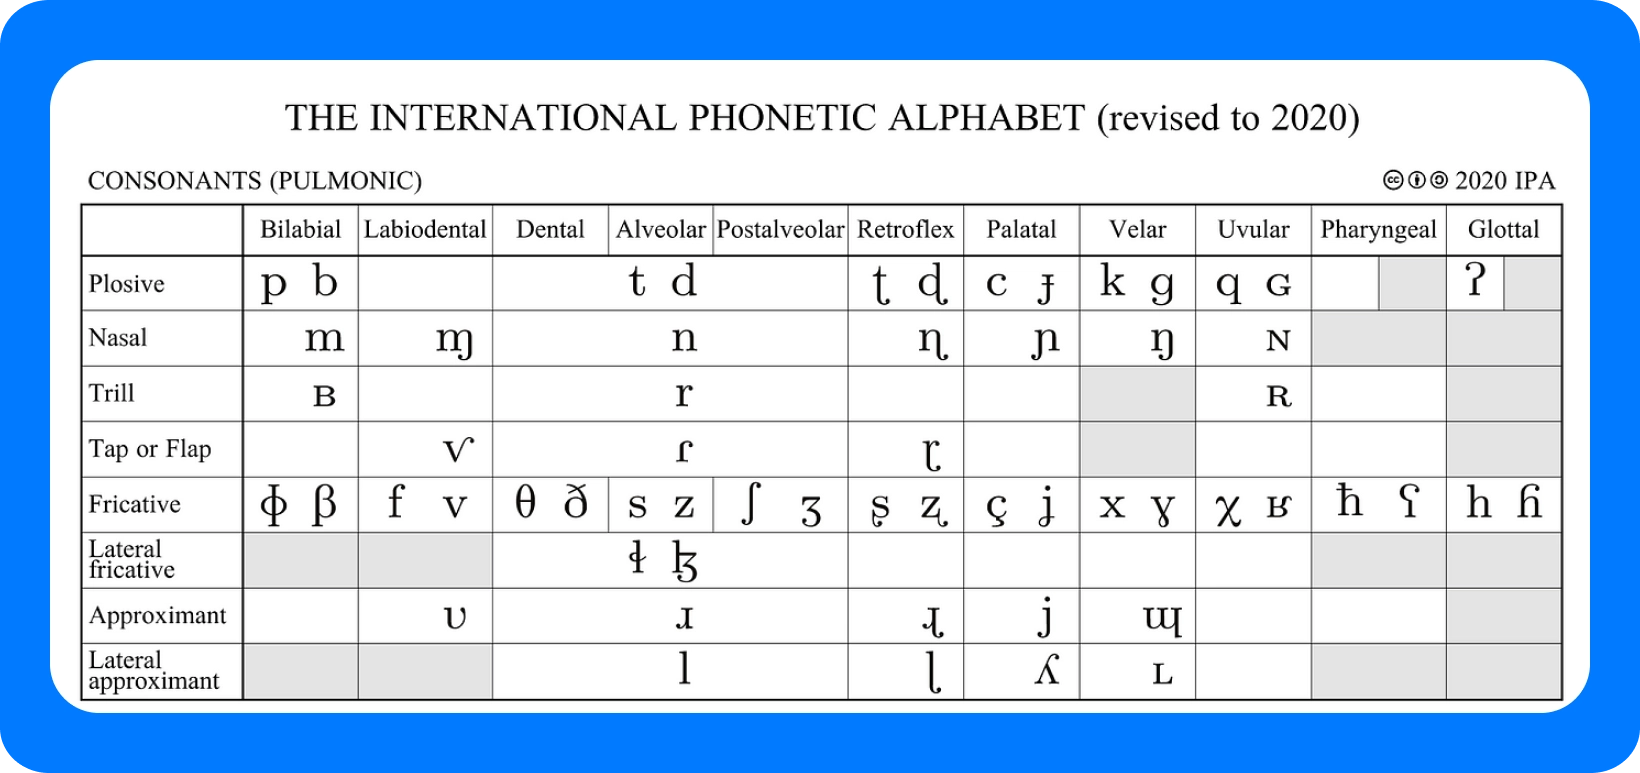 Quadro do Alfabeto Fonético Internacional para consoantes, revisto em 2020, detalhando pontos de articulação.